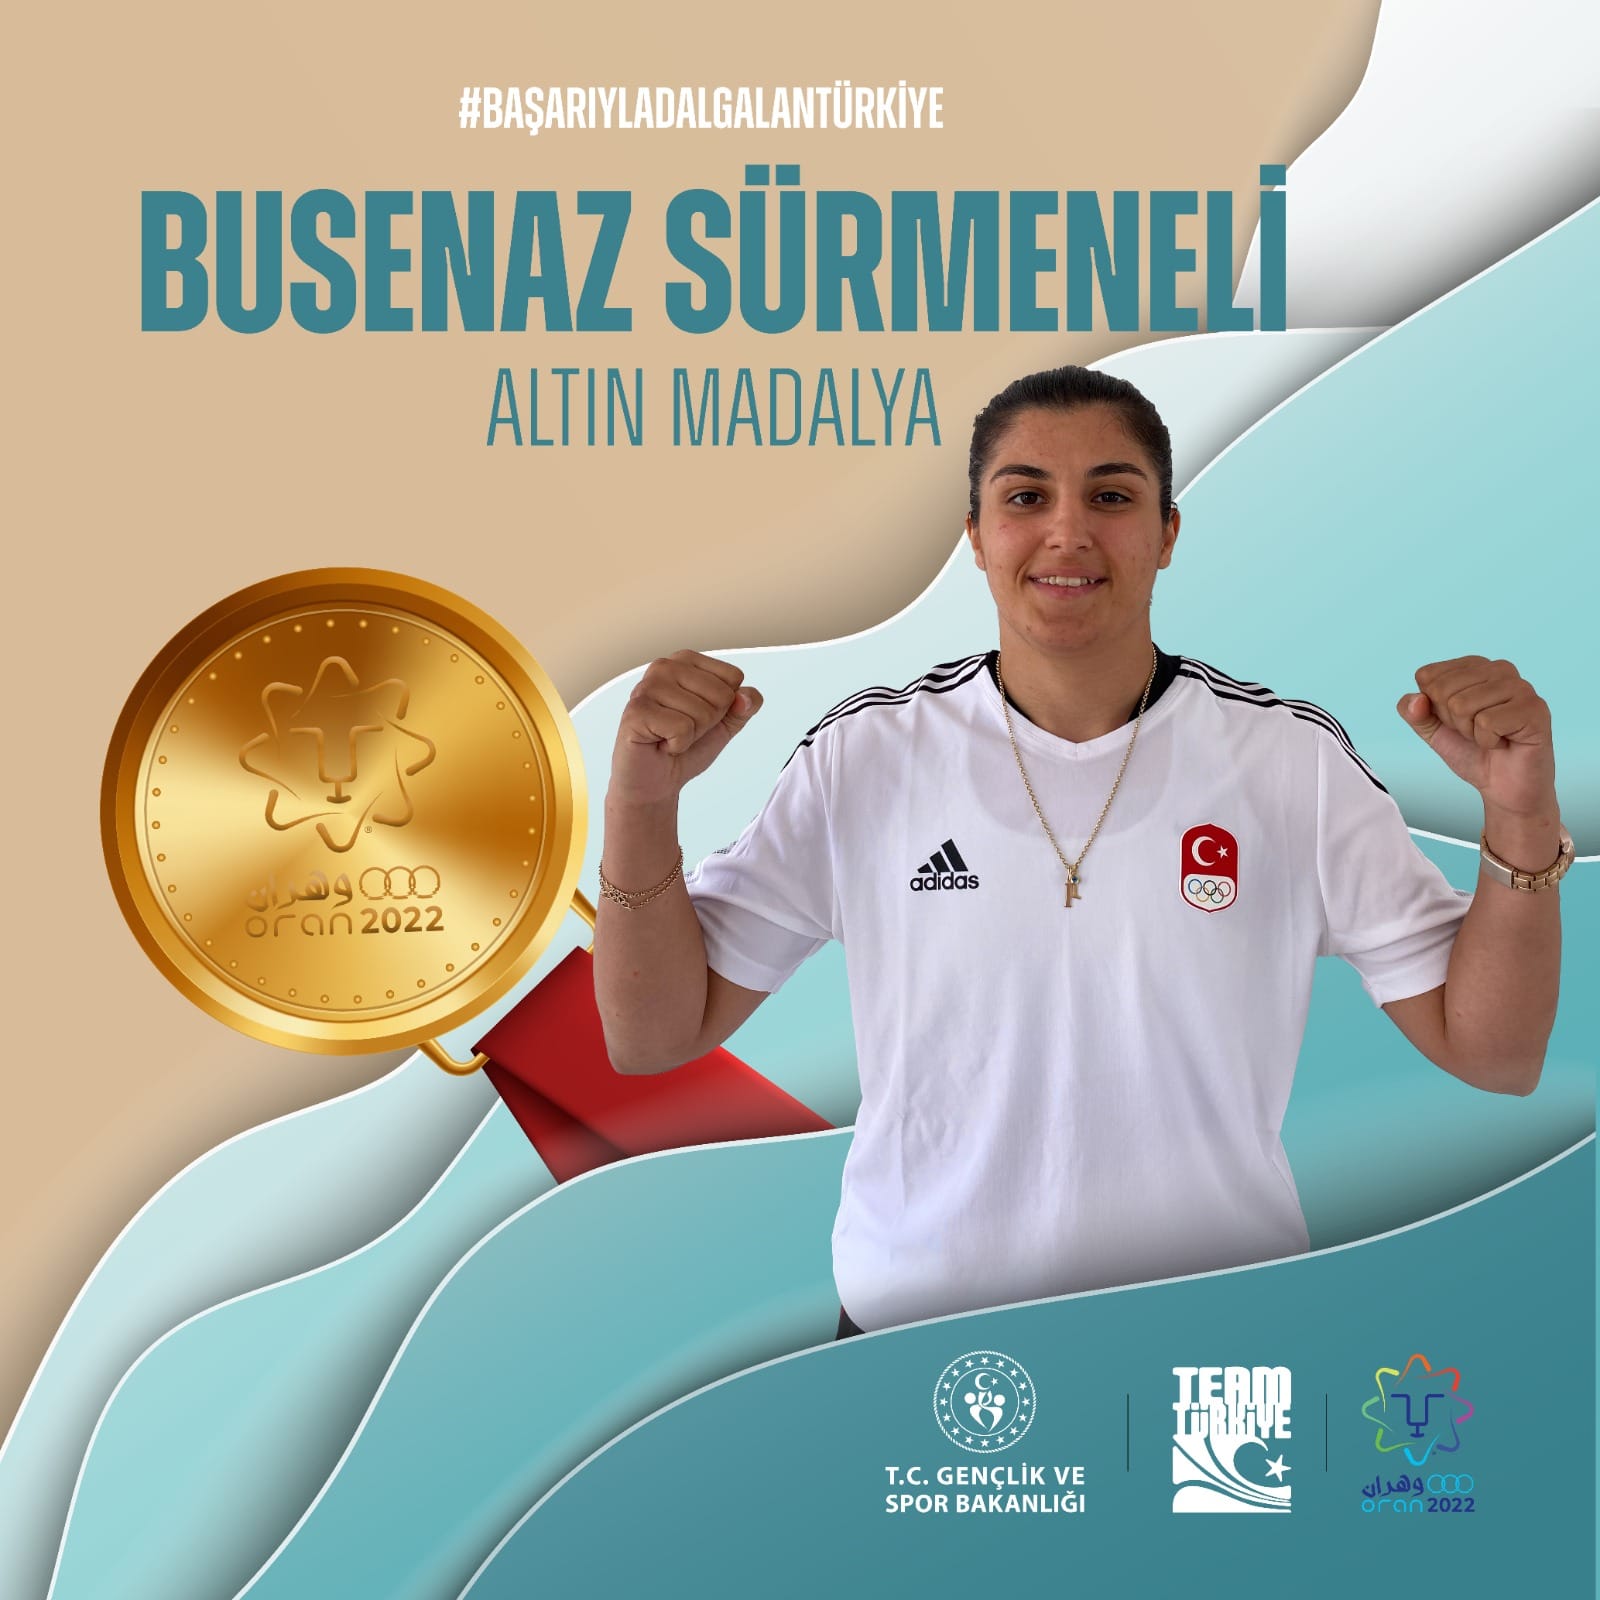 Şampiyon Öğrencimiz Busenaz Sürmeneli, Altın Madalyalı Turnuvalarına Akdeniz Oyunlarını da Ekledi